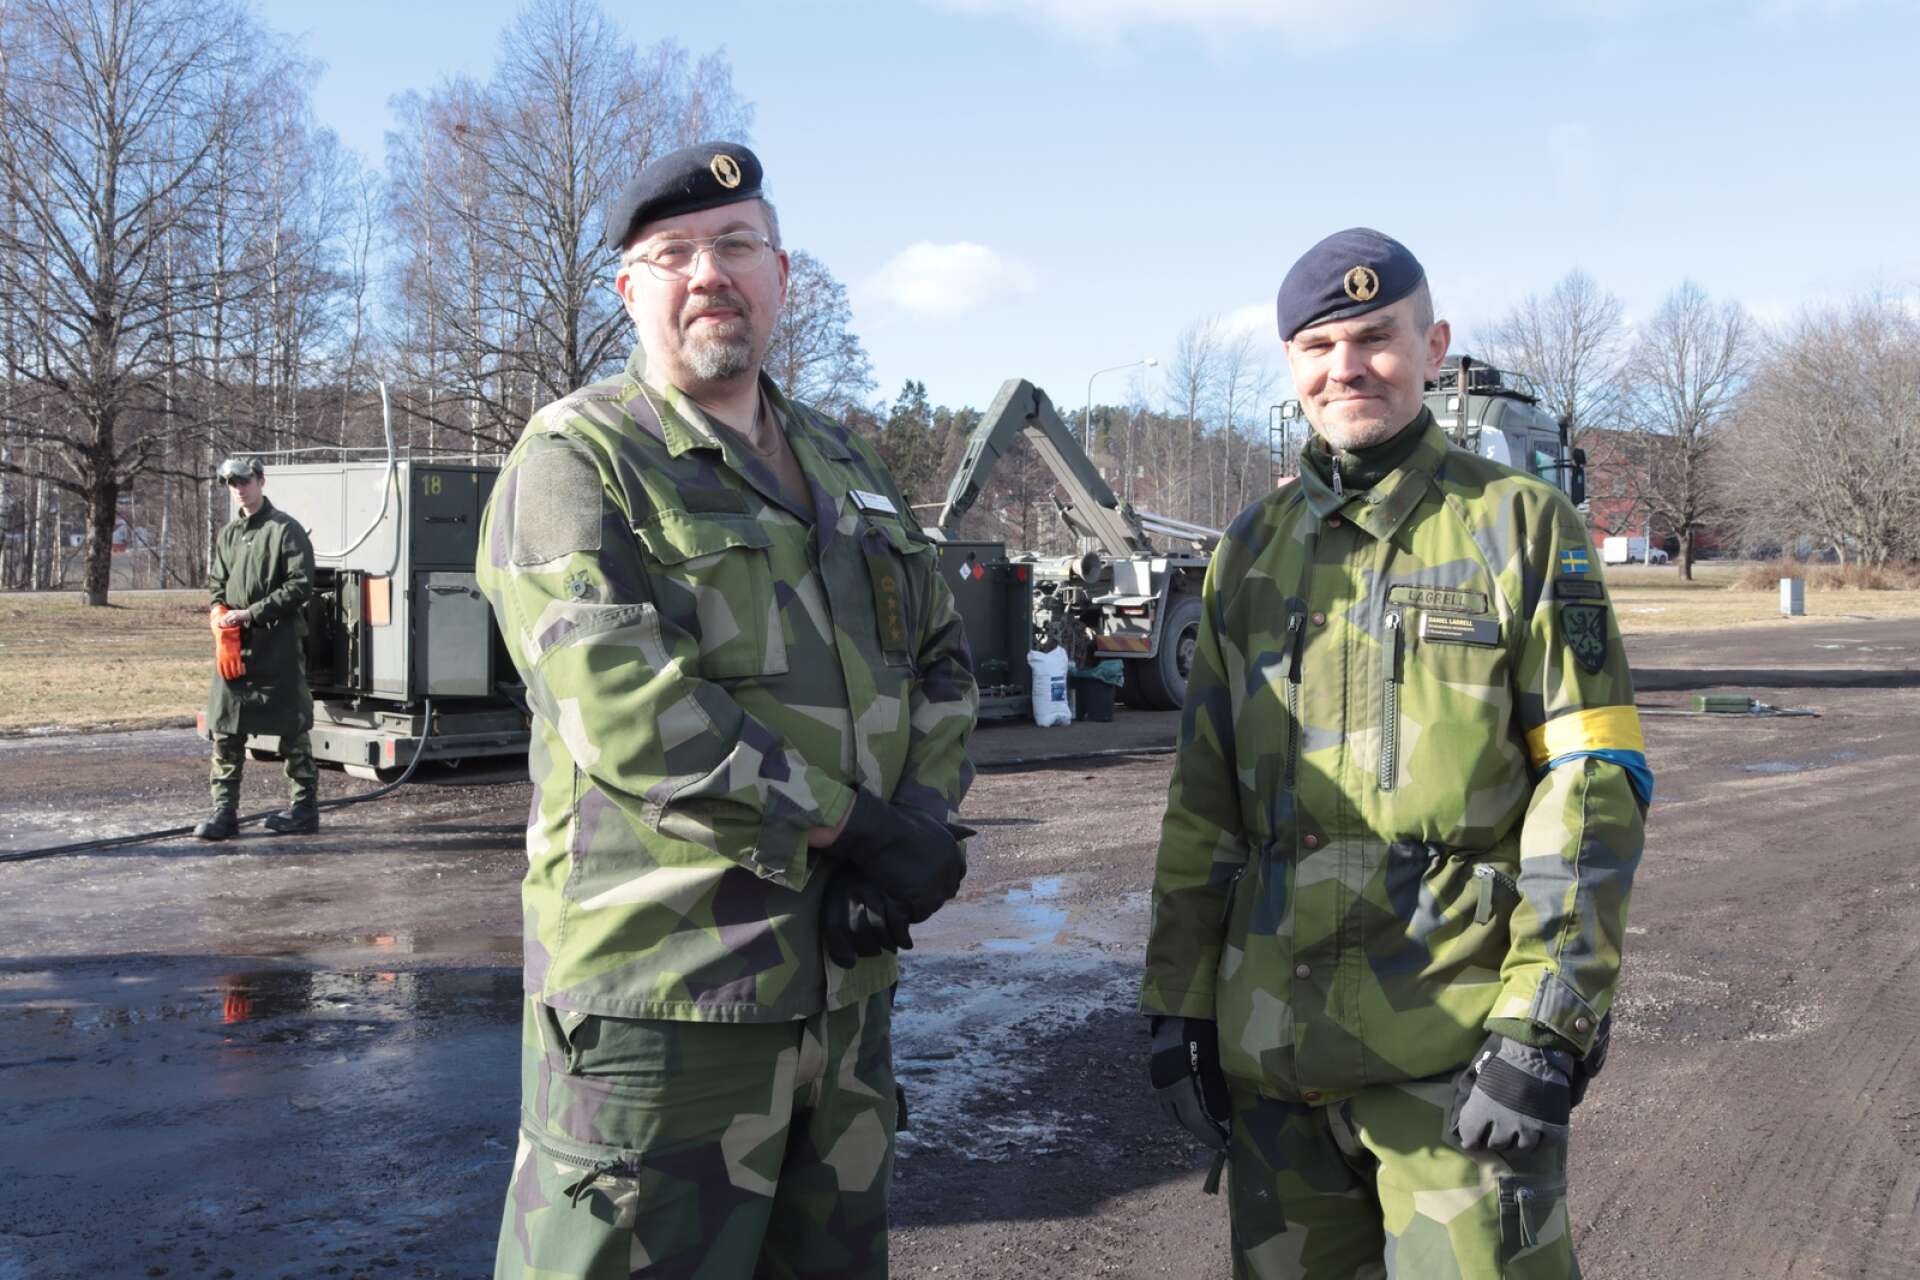 Regementschef Lars Jonsson och kompanichef Daniel Lagrell övervakade övningen.